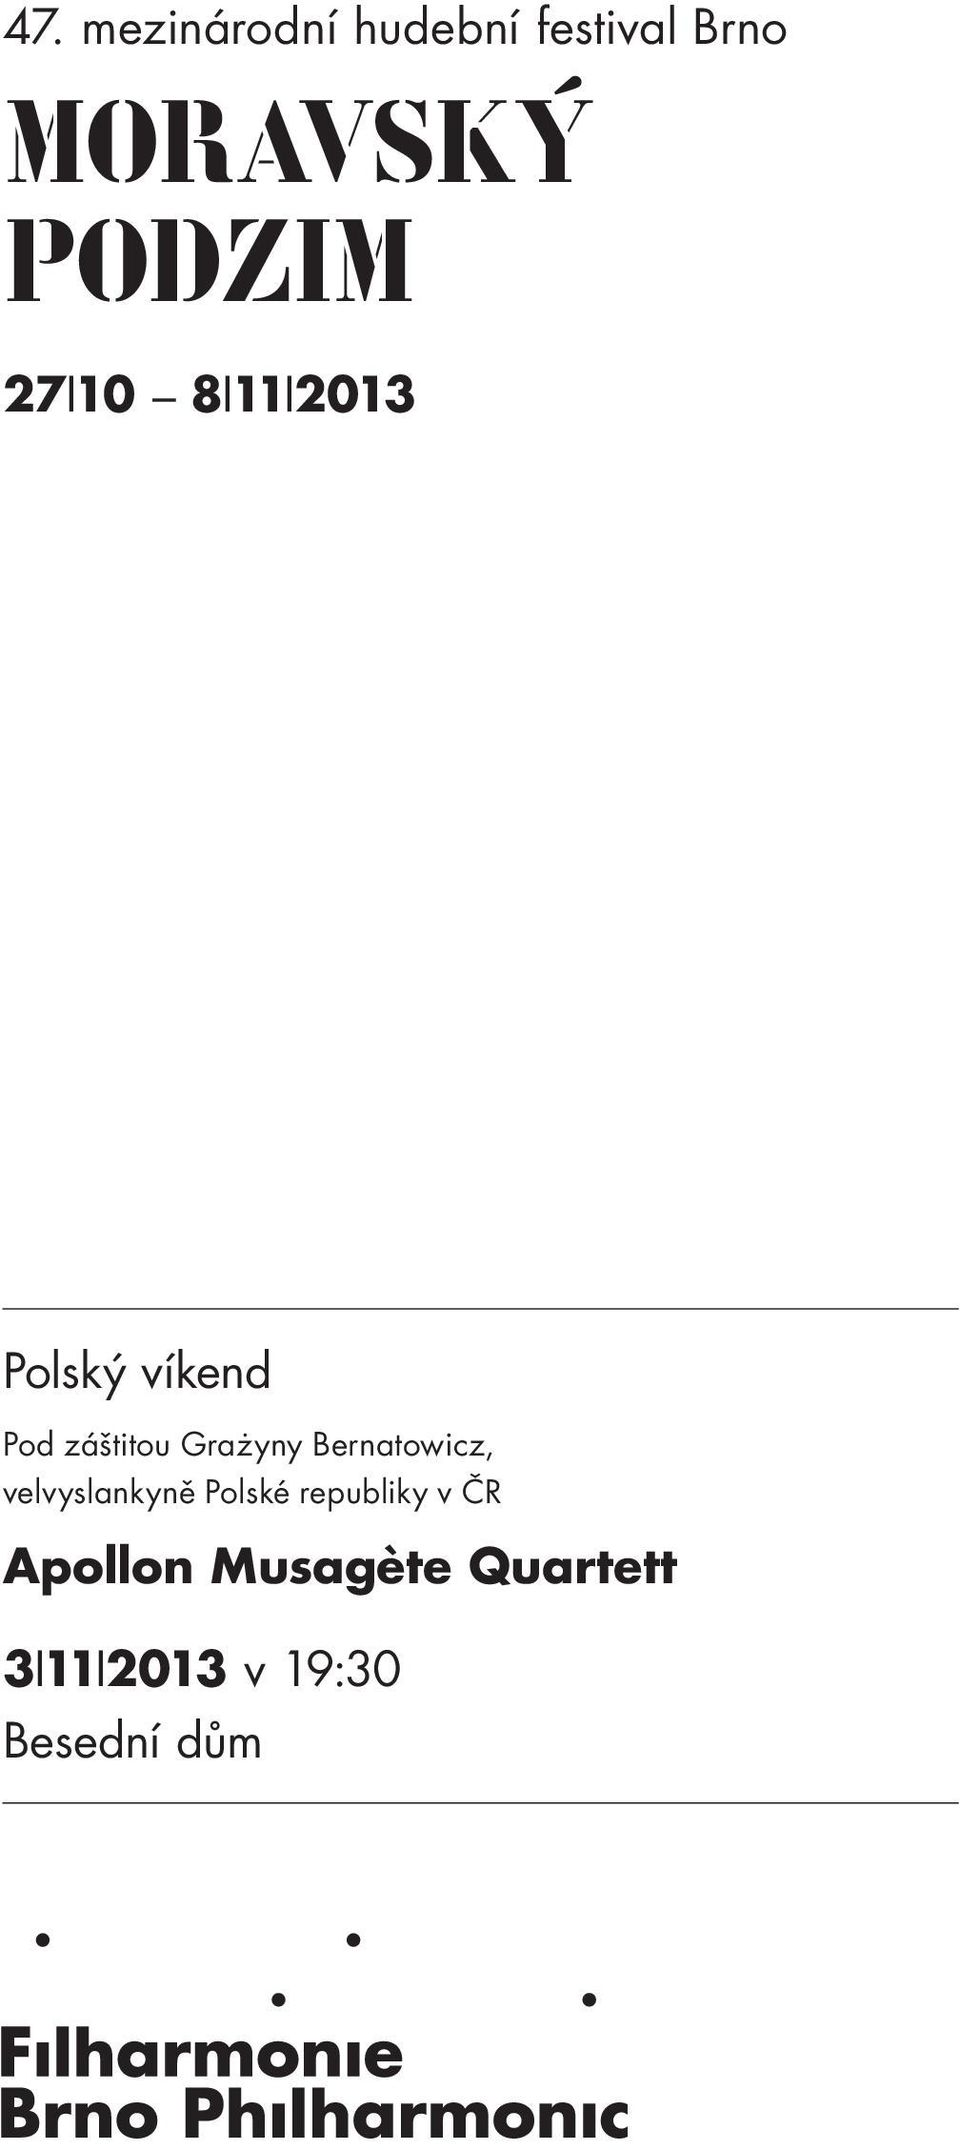 Grażyny Bernatowicz, velvyslankyně Polské republiky